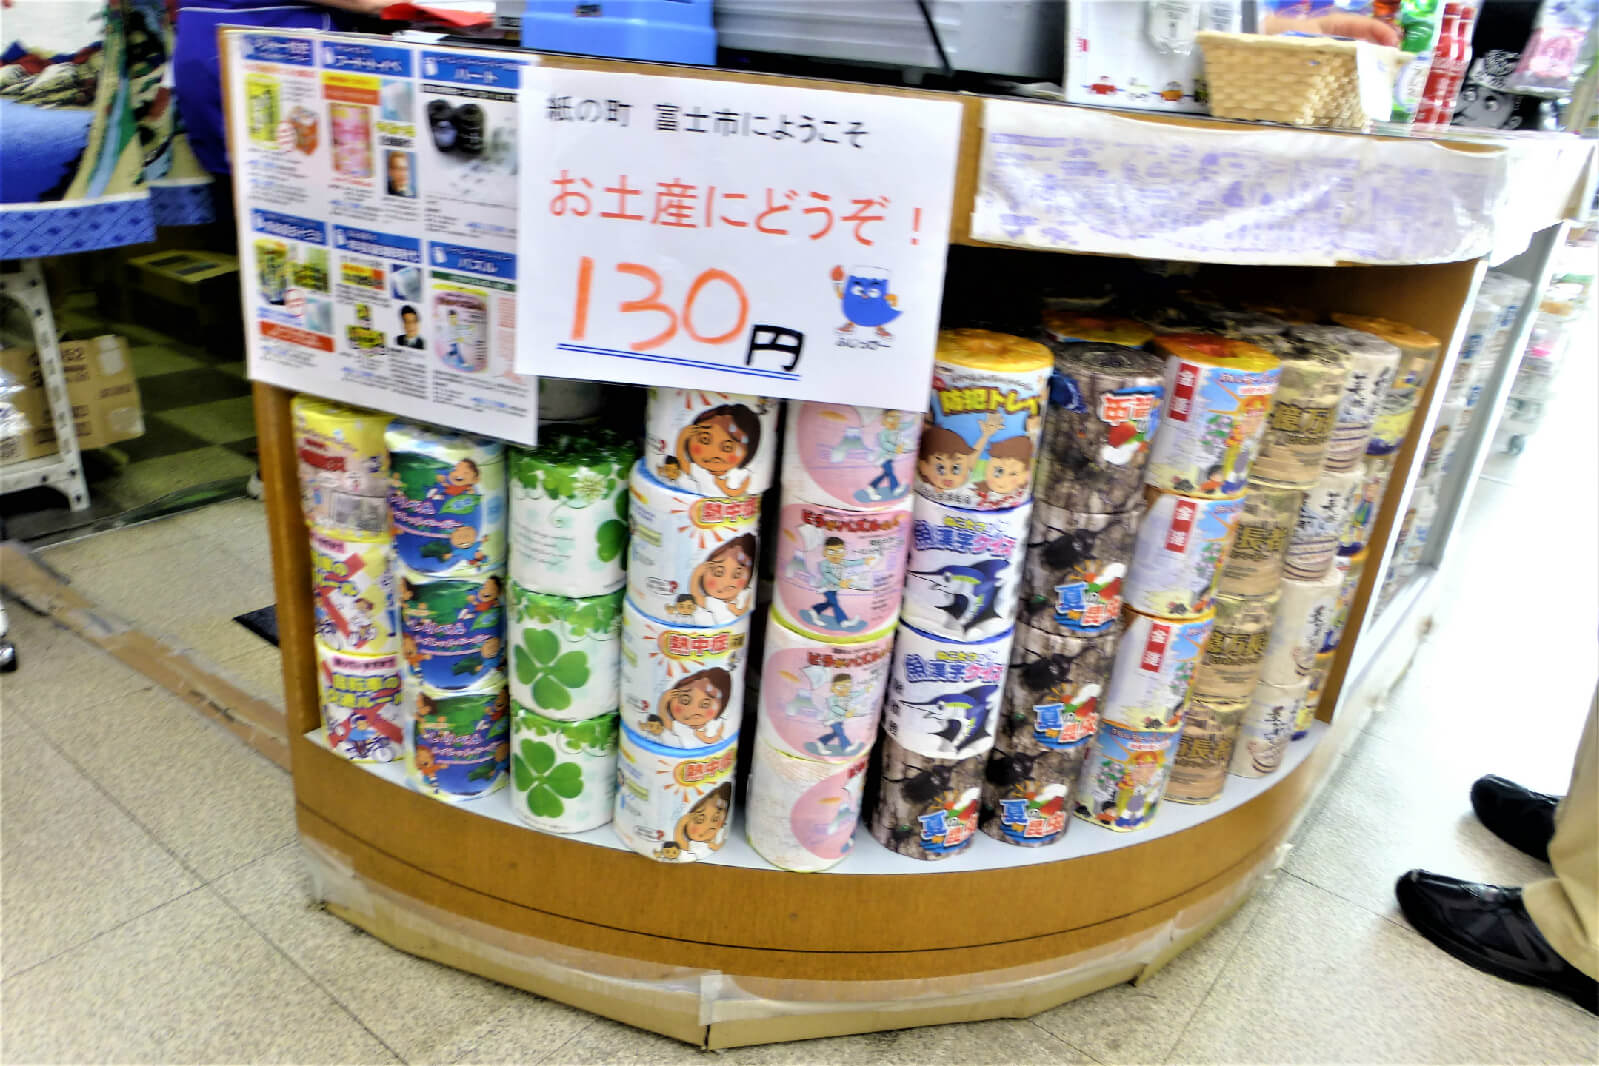 道の駅富士 トイレットペーパーが販売され、お土産としても人気